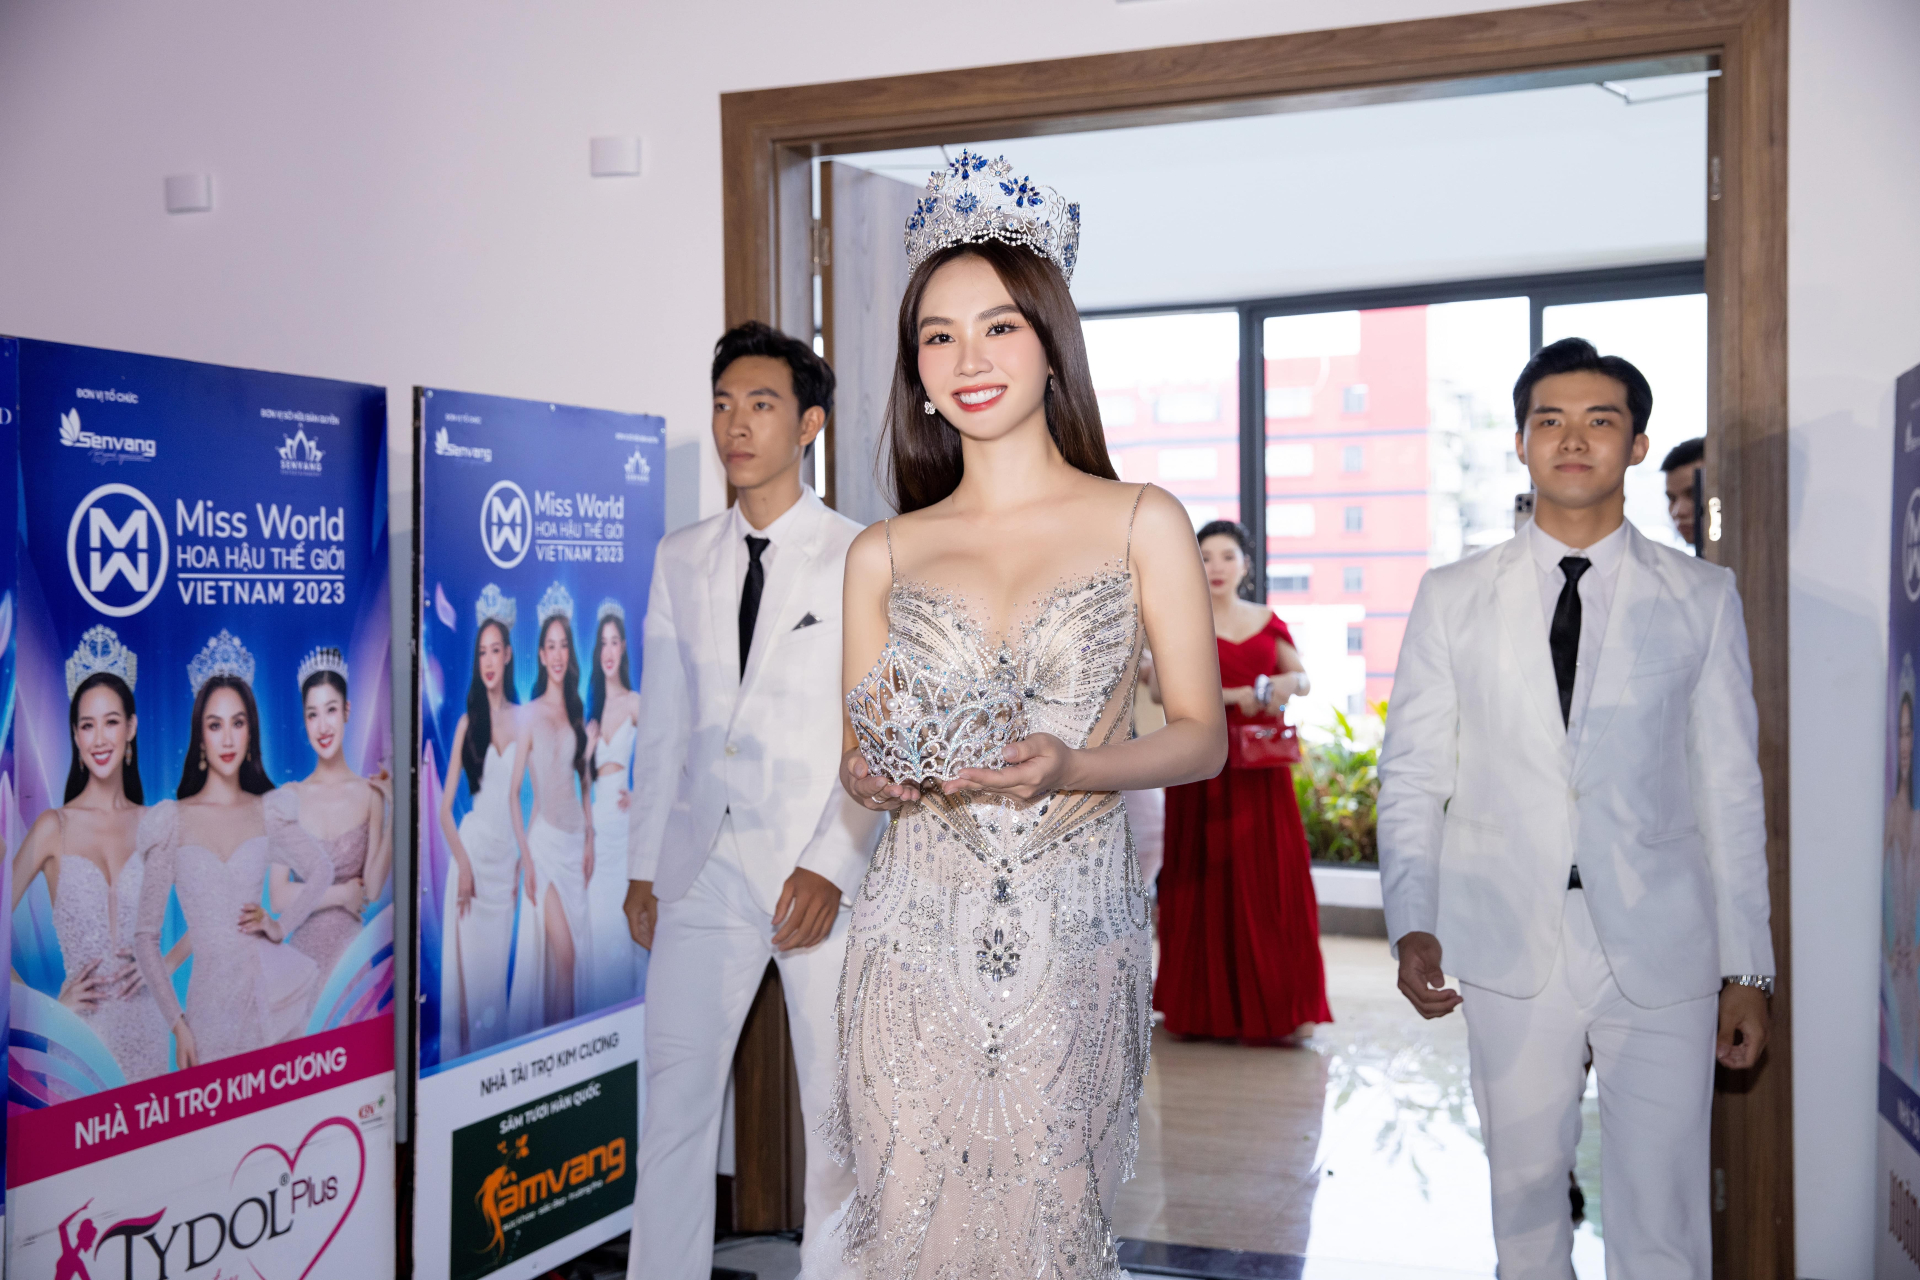 Trong phần giới thiệu vương miện Miss World Vietnam 2023 đã xảy ra một  sự cố ngoài ý muốn khi vương miện rơi ra khỏi vị trí khiến các khách mời 1 phen thót tim.